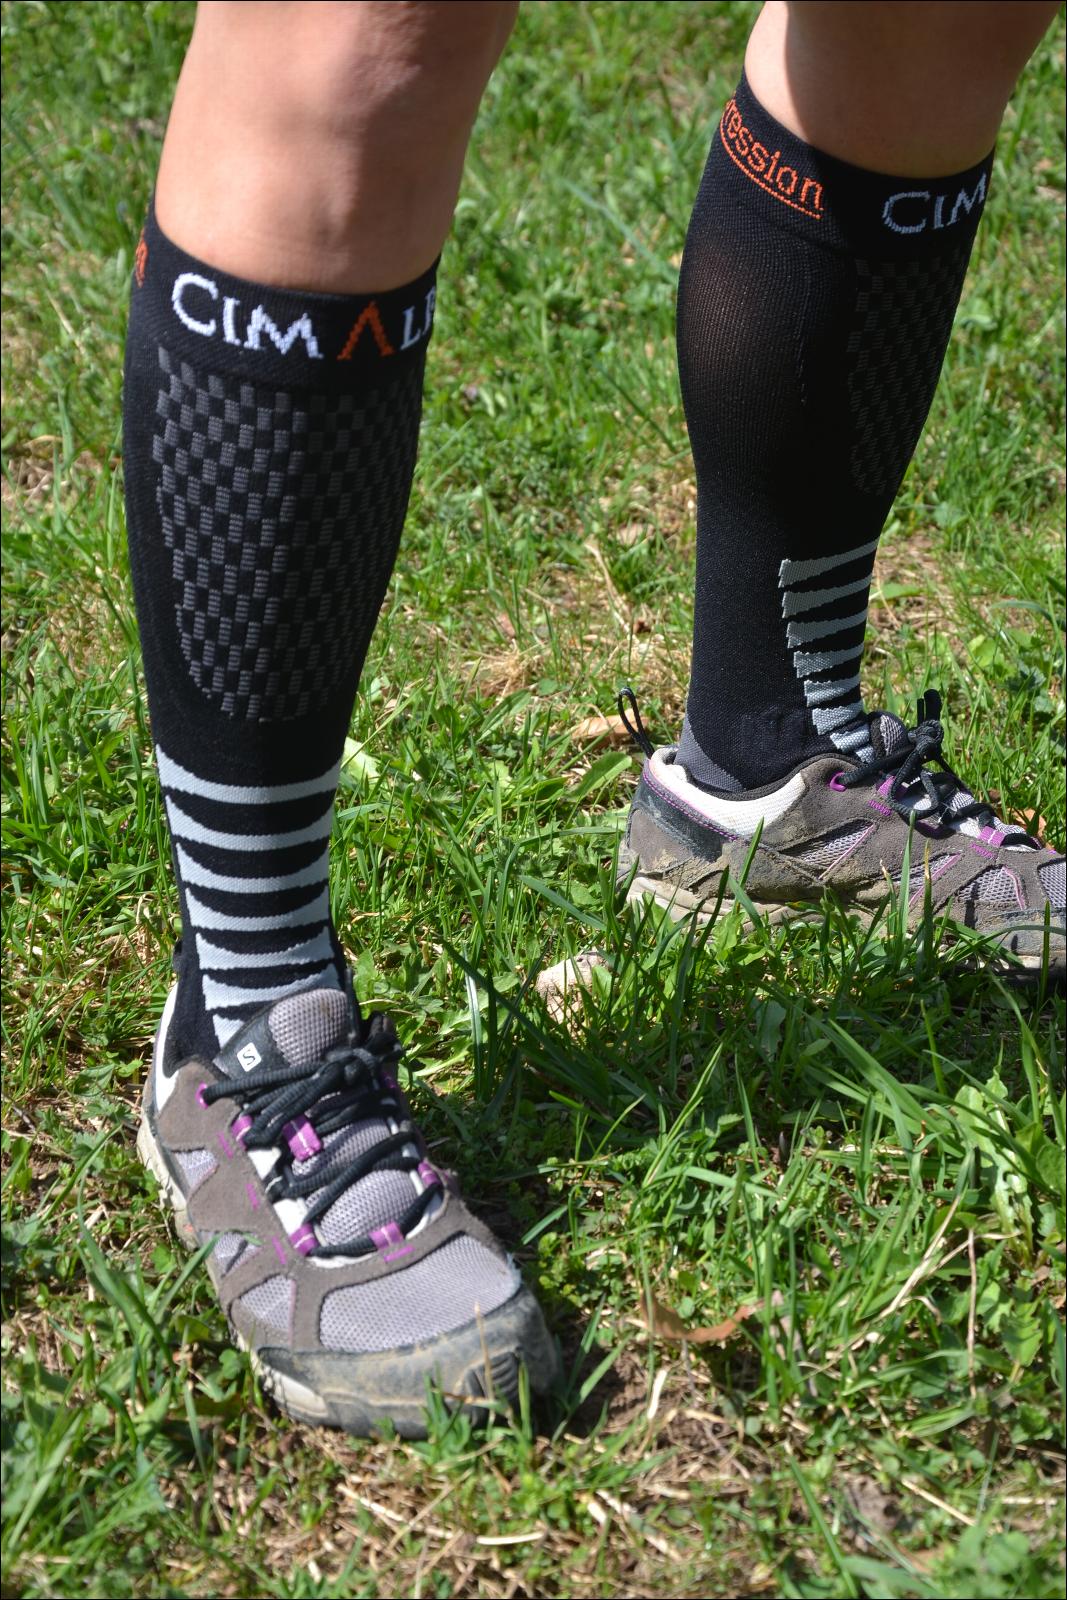 Essai des chaussettes de compression défatigantes CIMALP - Matos vélo,  actualités vélo de route et tests de matériel cyclisme